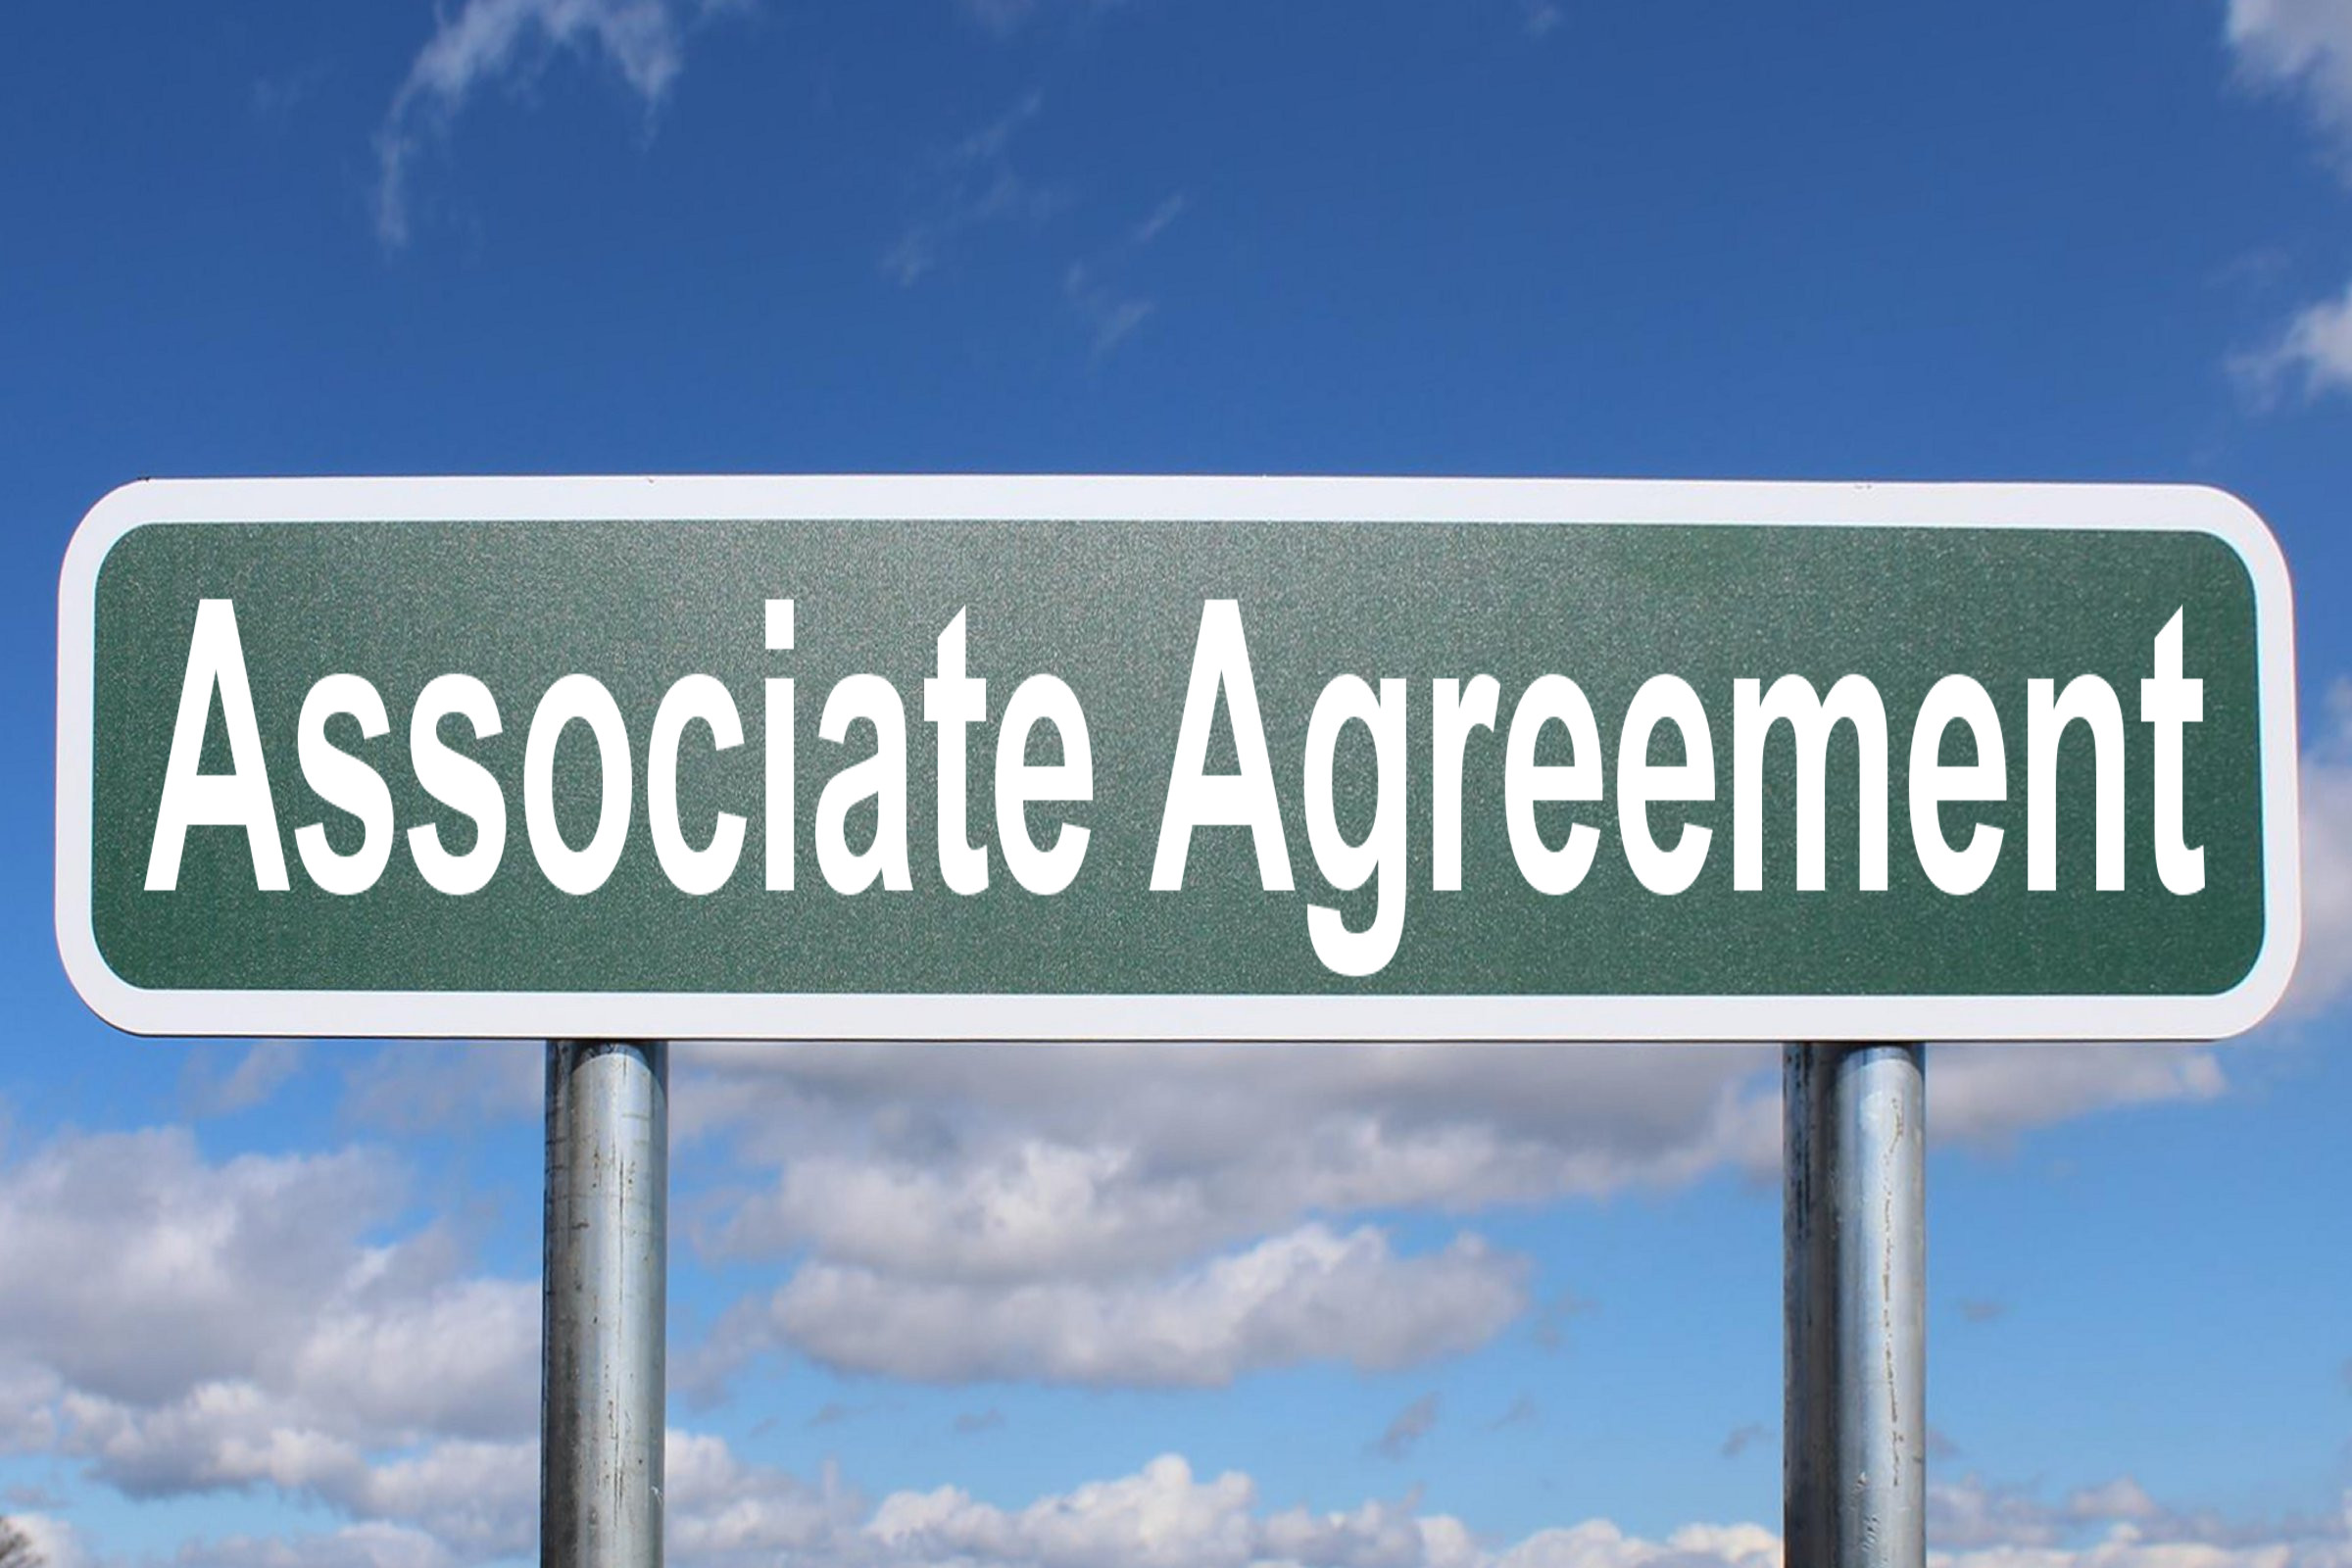 associate agreement